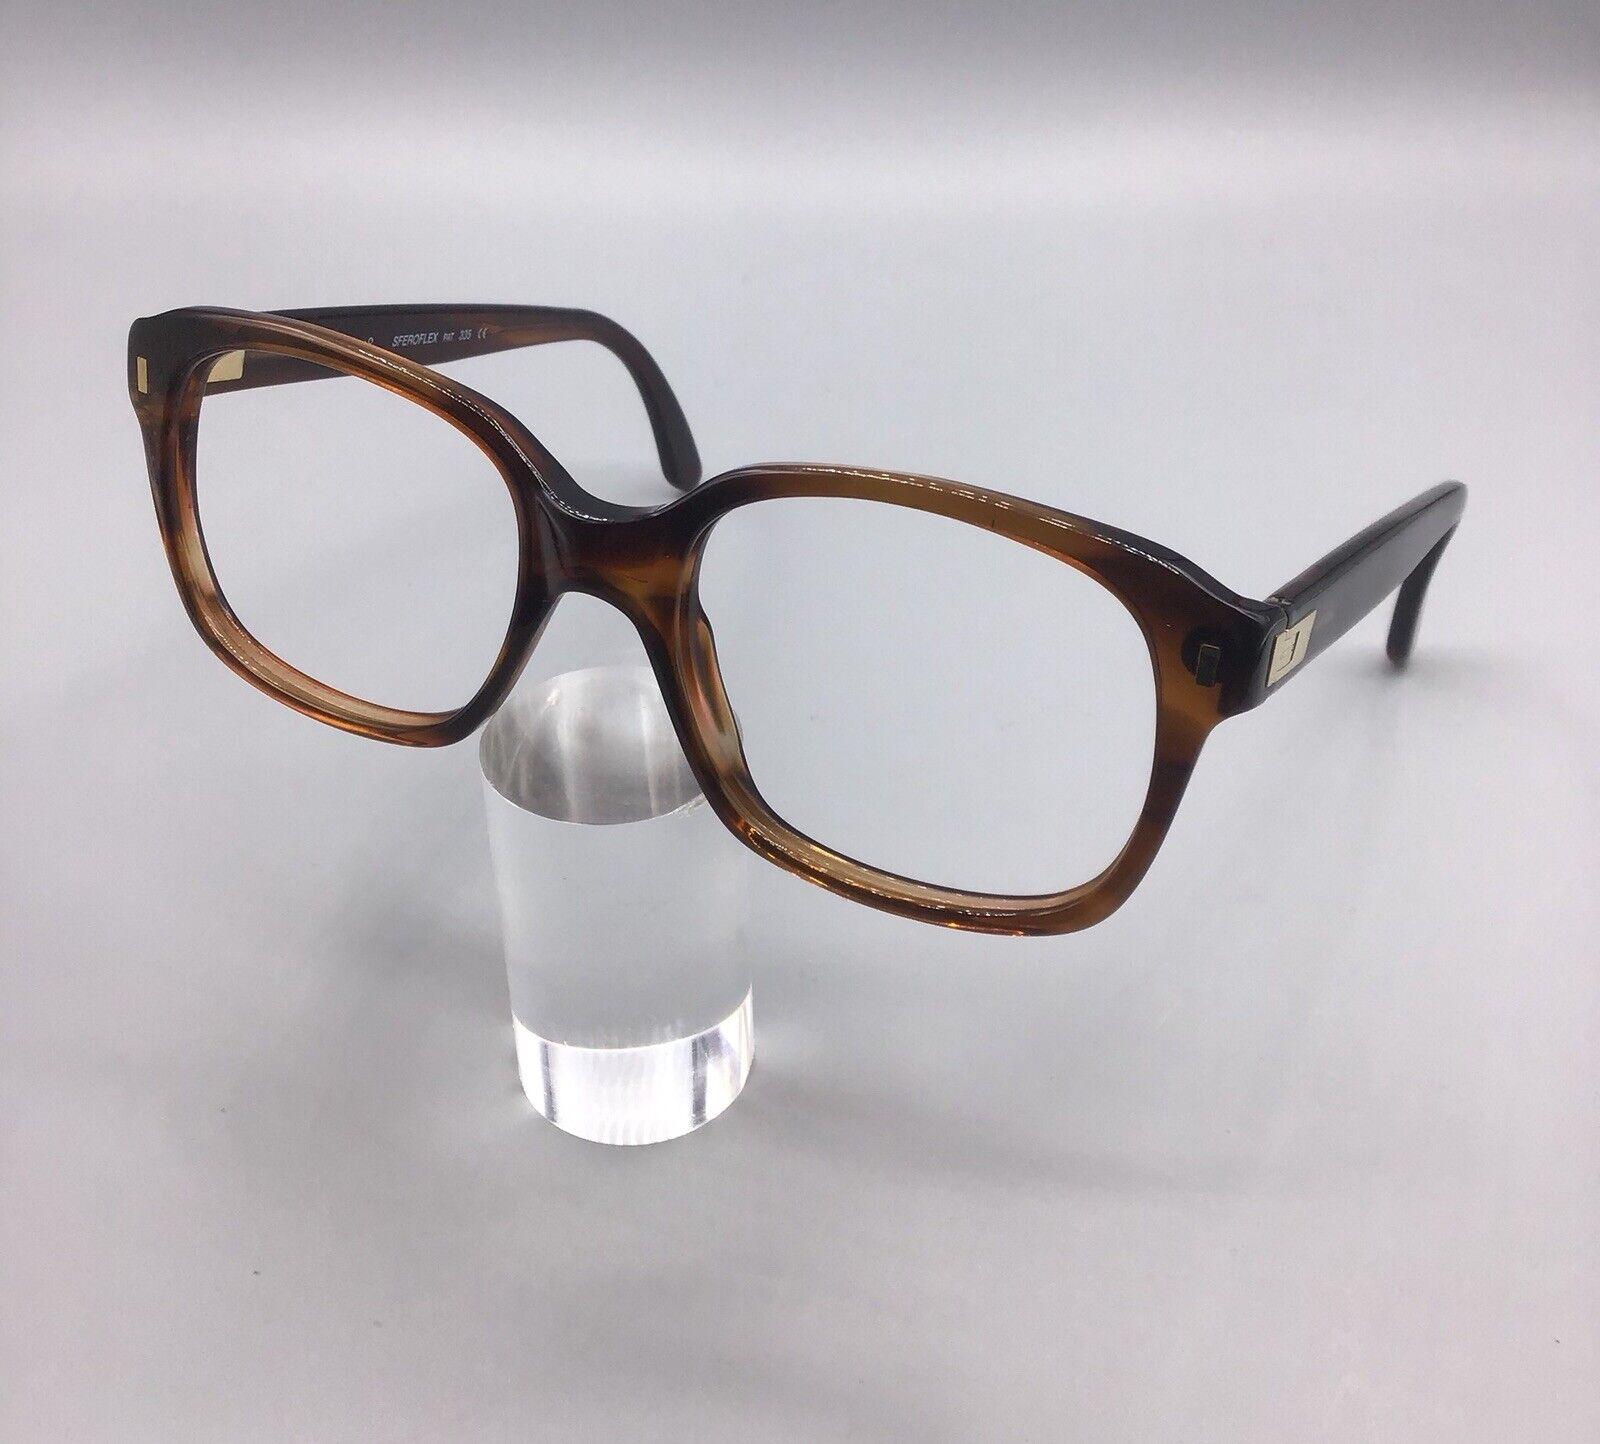 Sferoflex pat 335 frame italy 169 occhiale vintage eyewear brillen lunettes